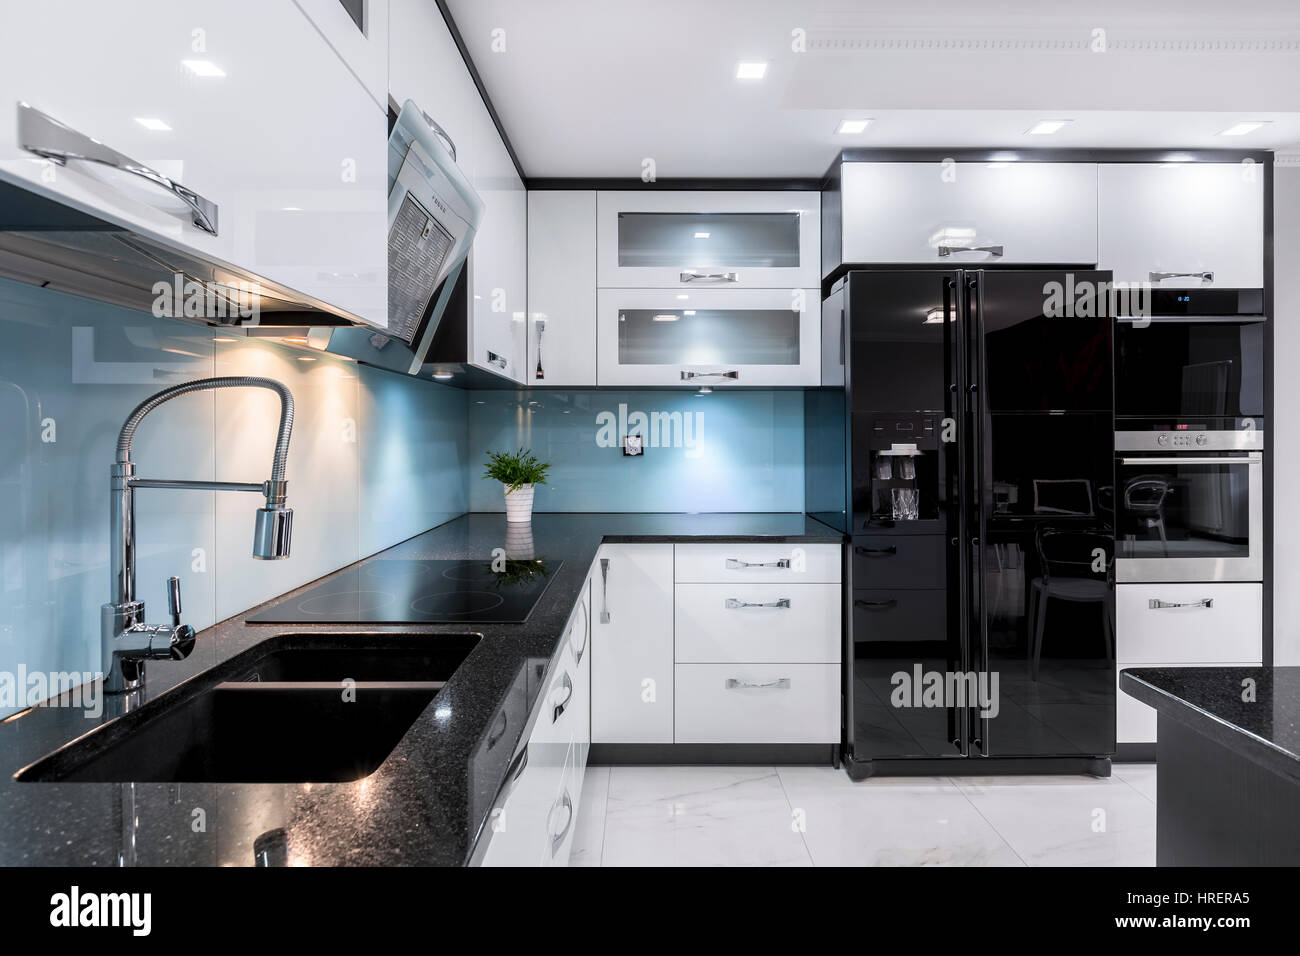 Elegancia de cocina moderna vista de ángulo alto de un impresionante fregadero  negro y encimera blanca